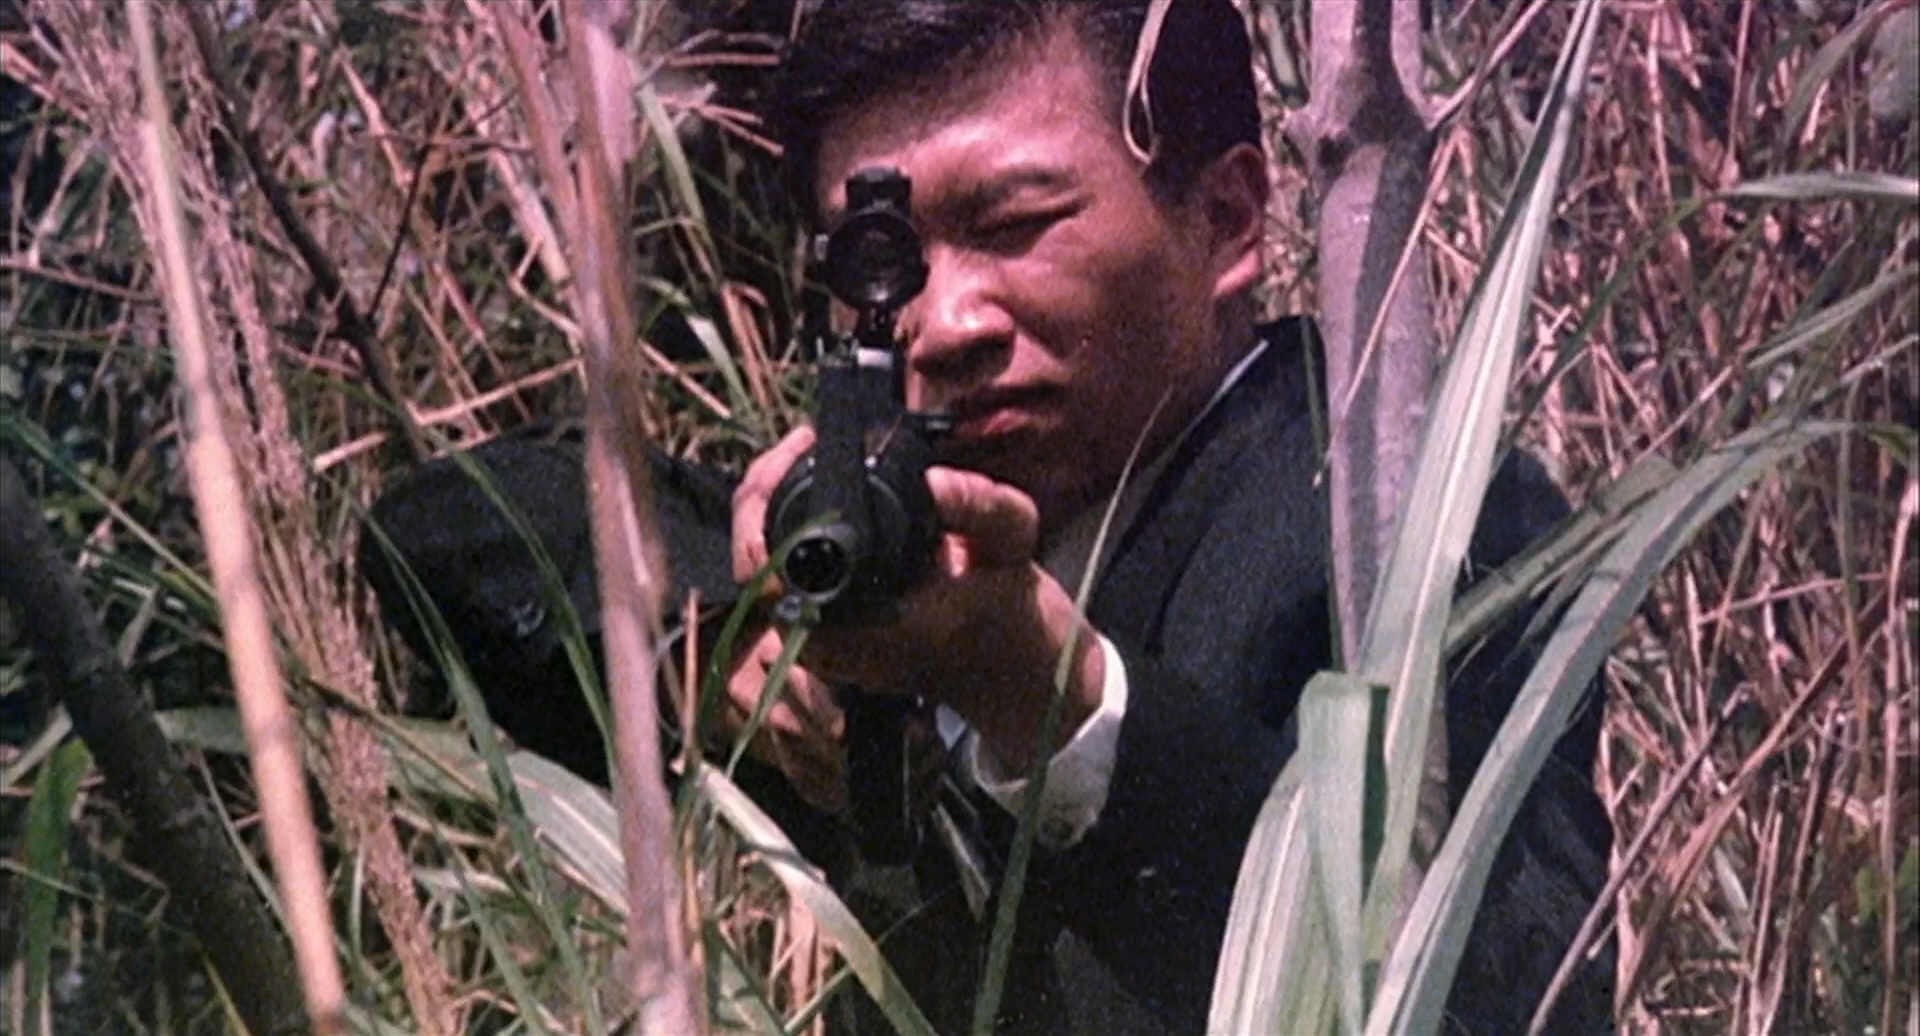 Наёмный убийца (Киллер) / The Killer (Dip huet seung hung) / 1989 / ПМ, ПД, АП (Гаврилов, Живов, Дольский) / BDRip (1080p)